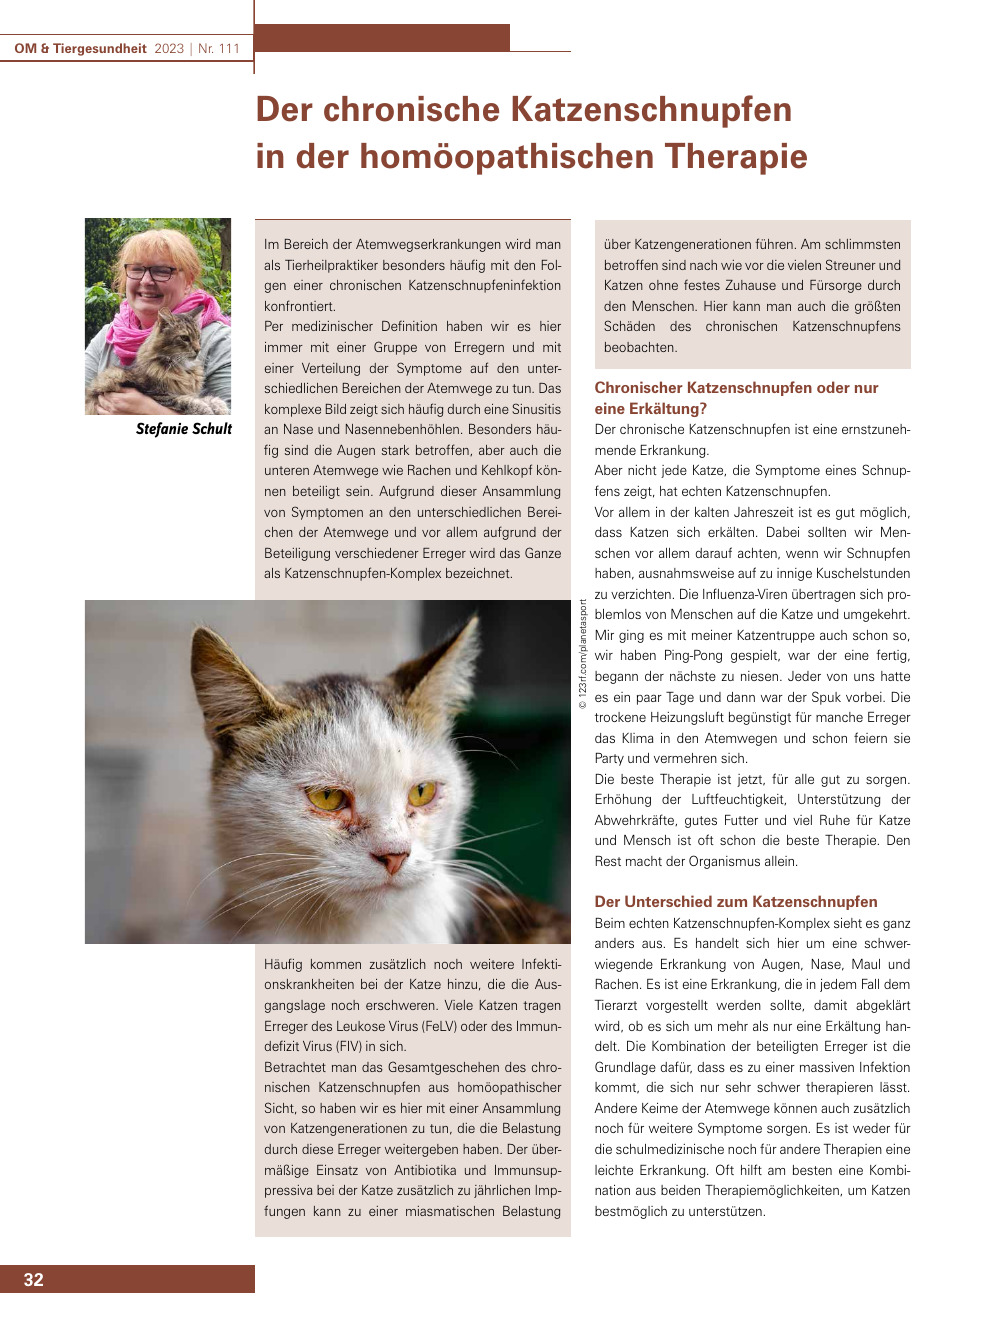 Der chronische Katzenschnupfen in der homöopathischen Therapie